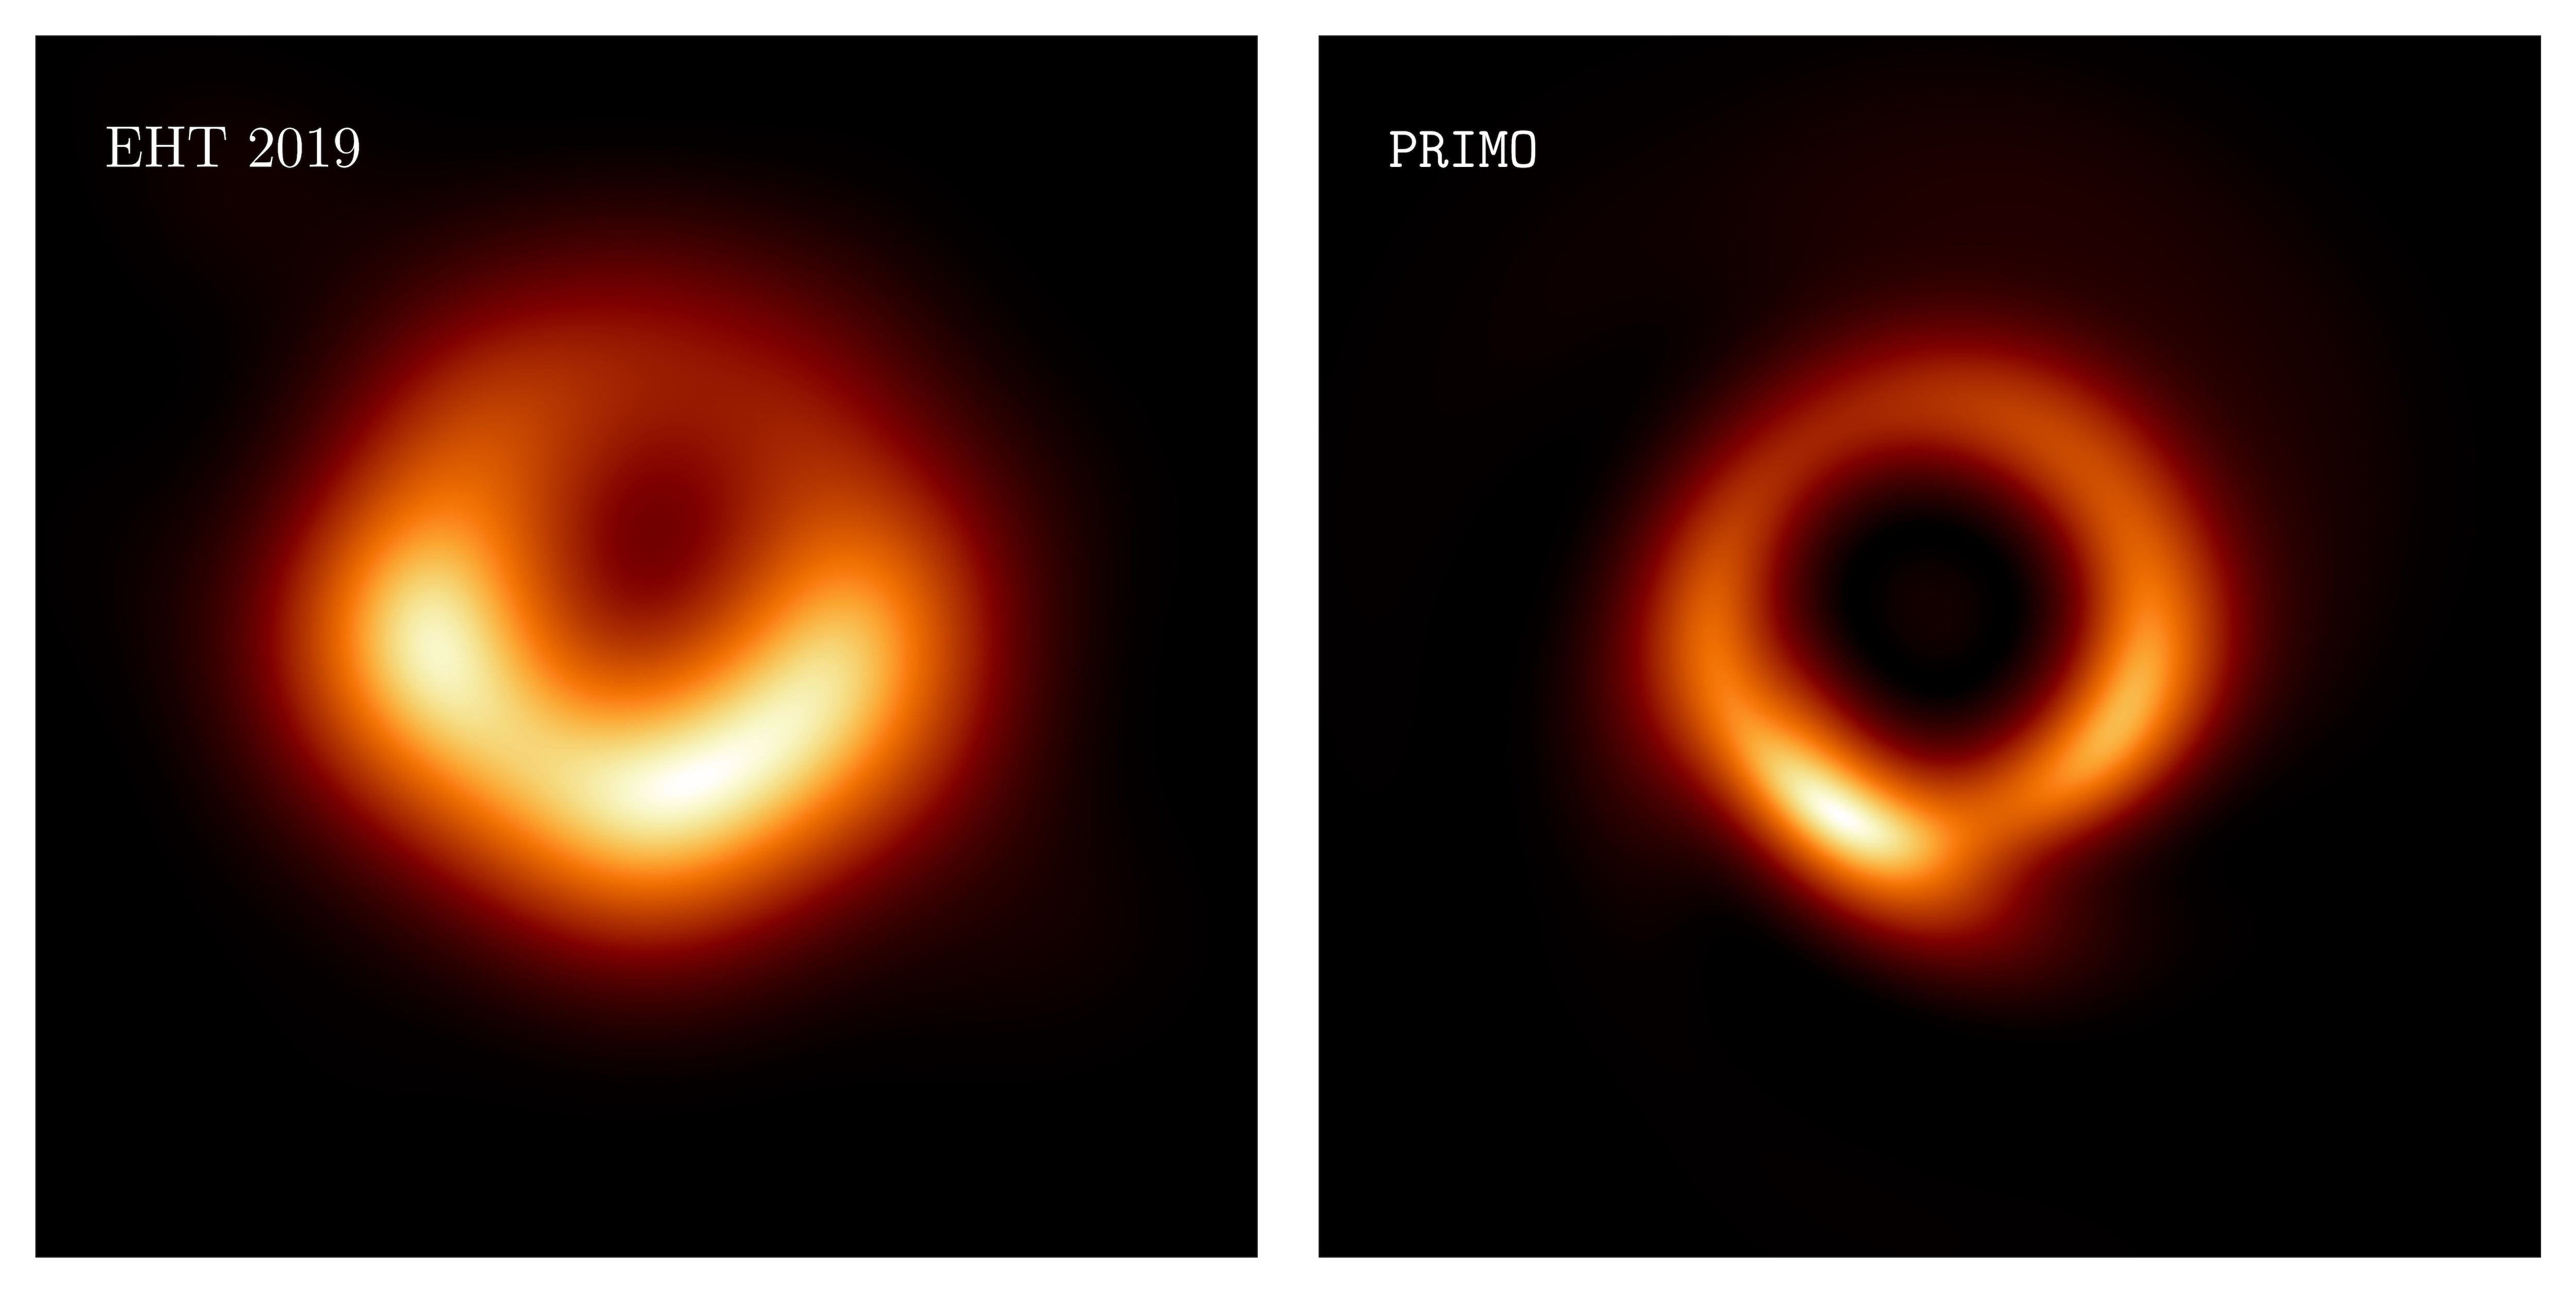 Vea la imagen más nítida hasta ahora de un agujero negro supermasivo - Infobae